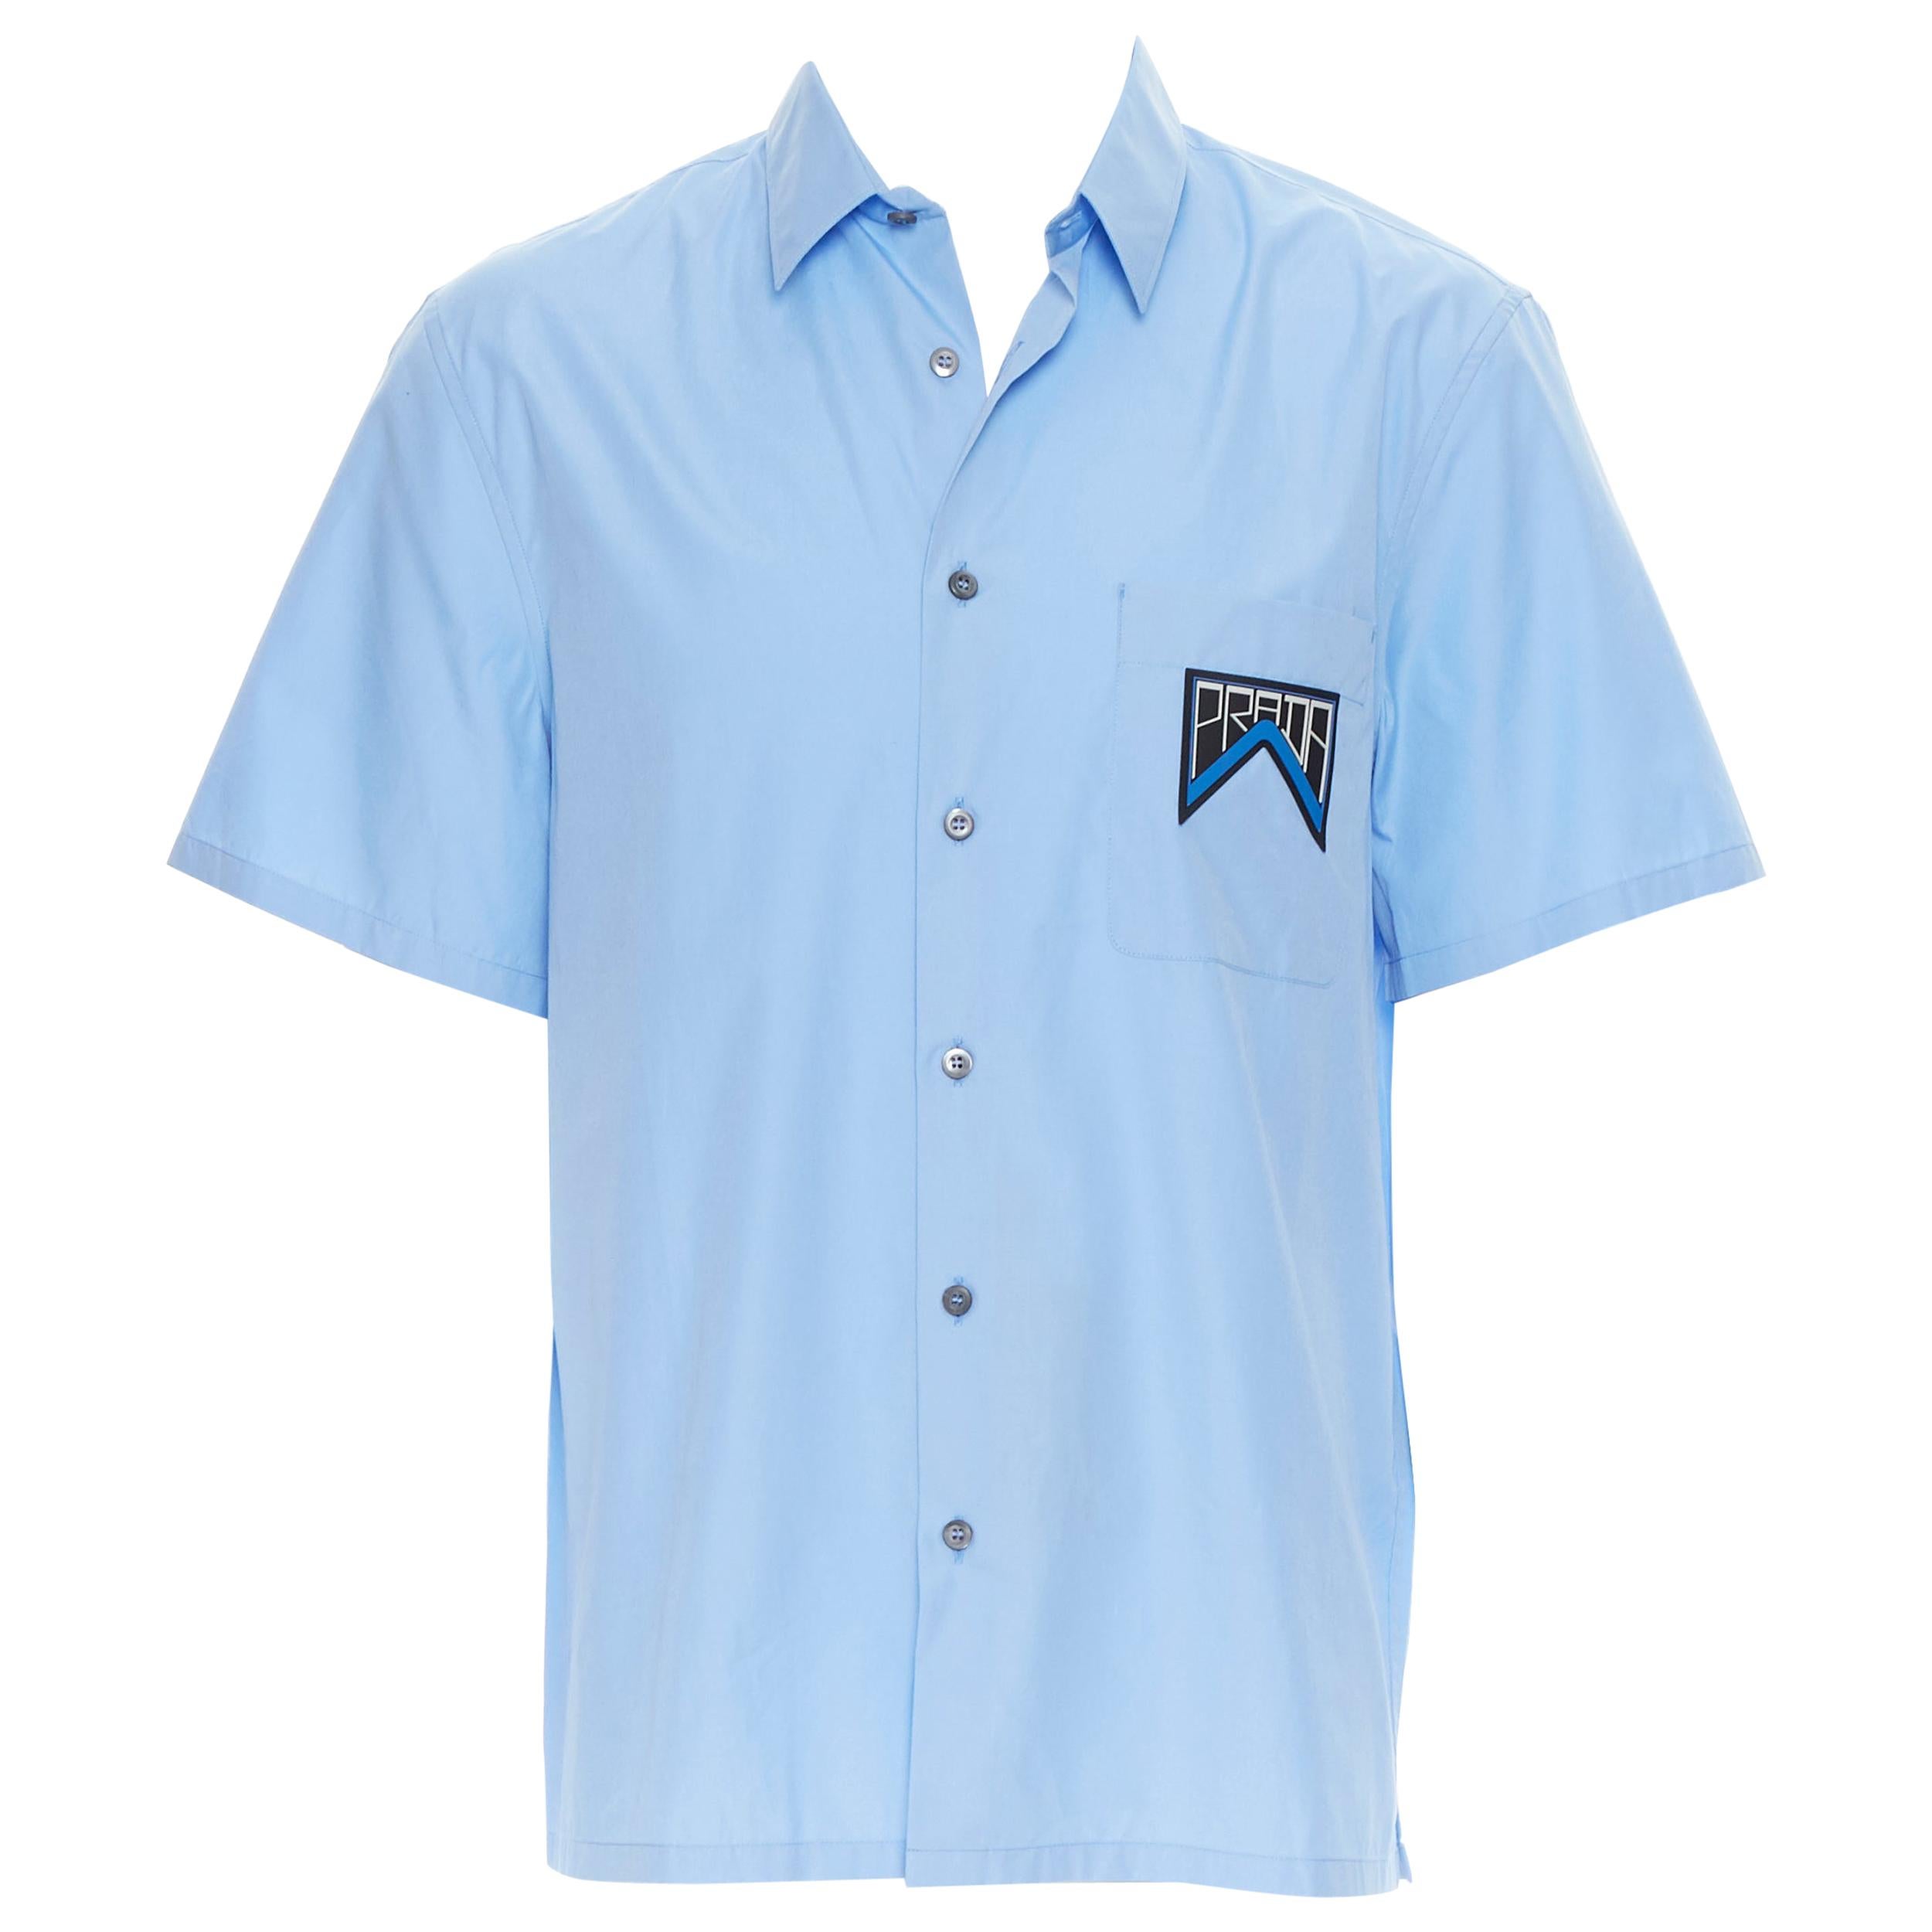 new PRADA 2019 light blue rubber logo patch breast pocket casual shirt EU41 L